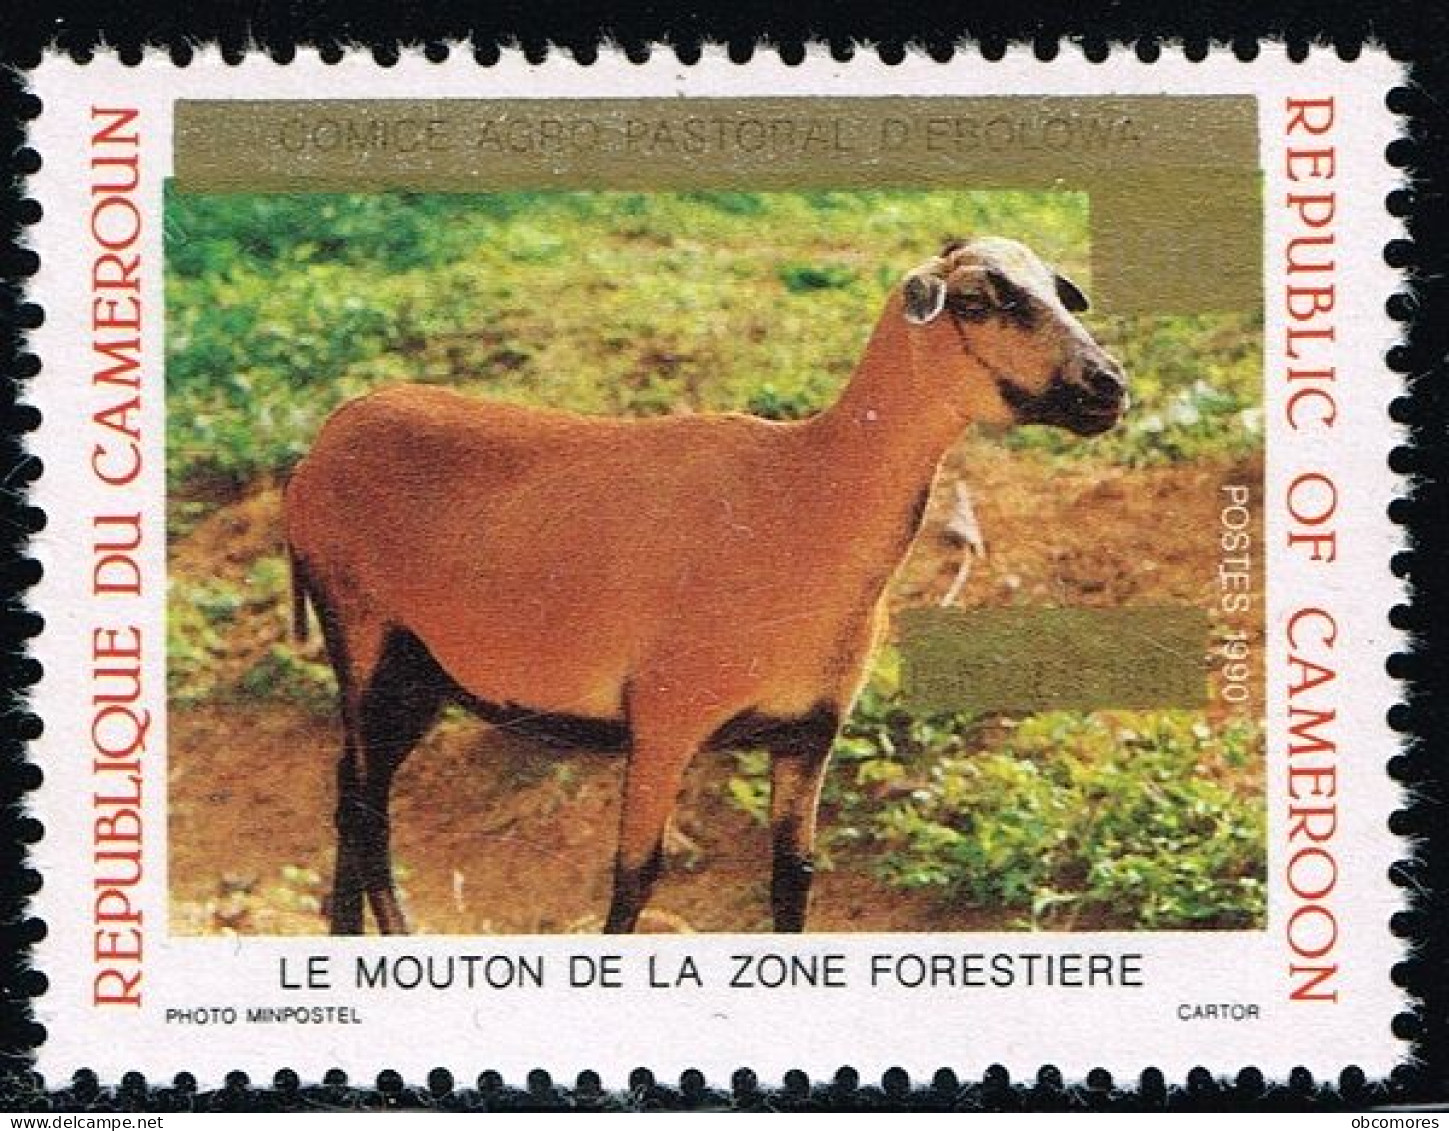 CAMEROUN Cameroon Kamerun 1993 Mouton Sheep Mi 1199 Sc 895 Overprint But Without New Value 125 F! RARE - MNH ** - Camerun (1960-...)